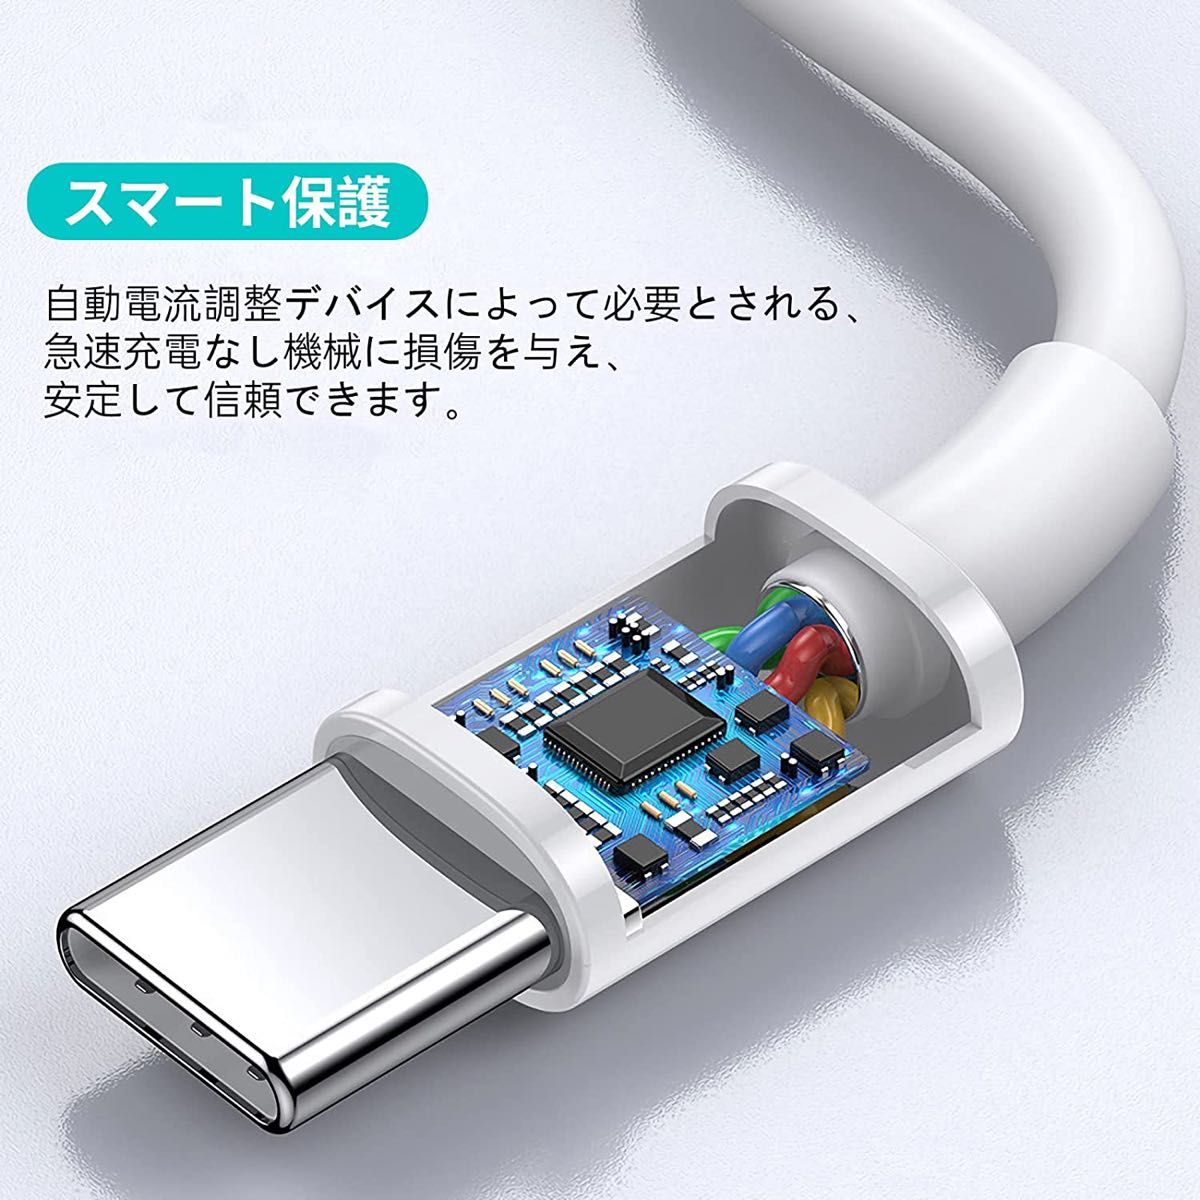 双方USB Type C 1メートル Type C 充電ケーブル 急速充電 高速データ転送 高い耐久性 頑丈 断線防止 新品未使用